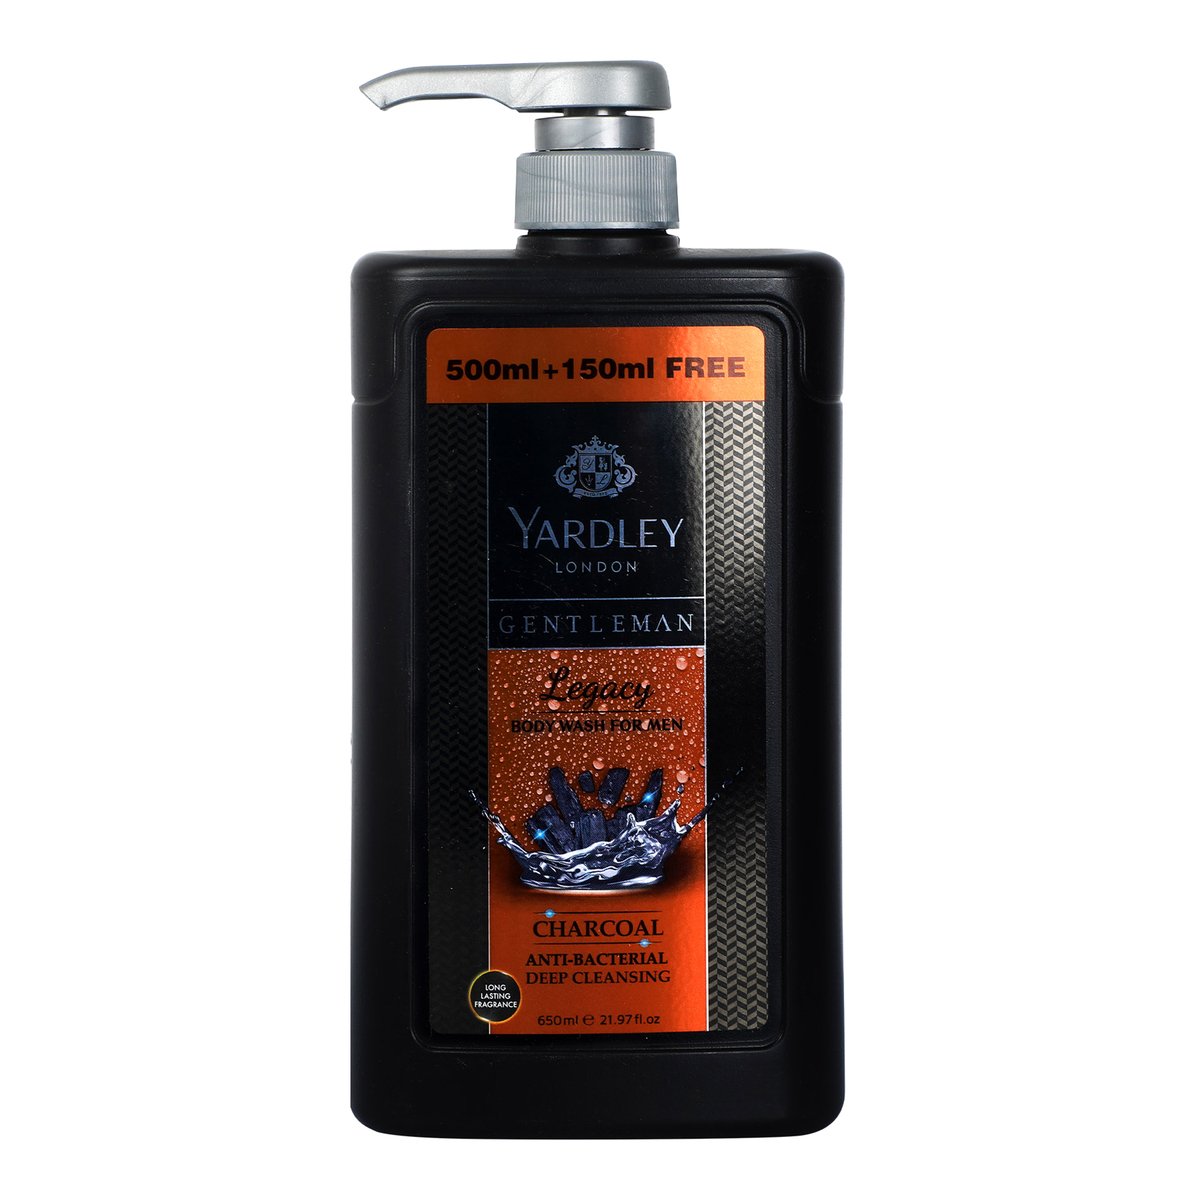 Yardley Body Wash Gentleman Legacy 500ml + 150ml